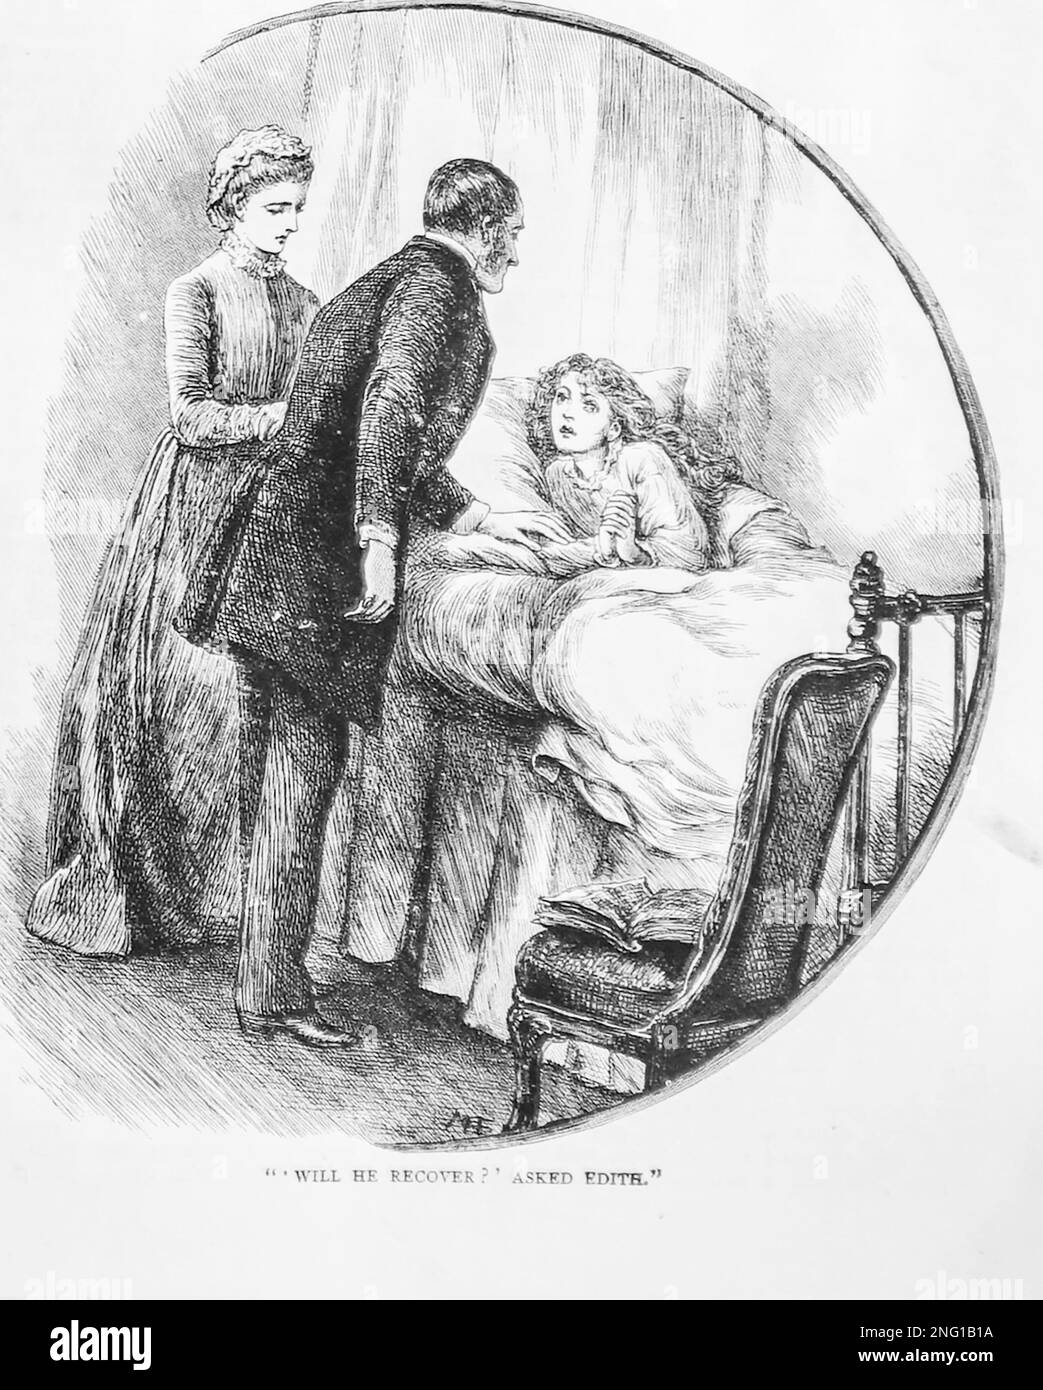 Un croquis datant de 19th ans d’un médecin qui examine un jeune garçon au lit alors que la mère du garçon se demande avec inquiétude si l’enfant se rétablira Banque D'Images